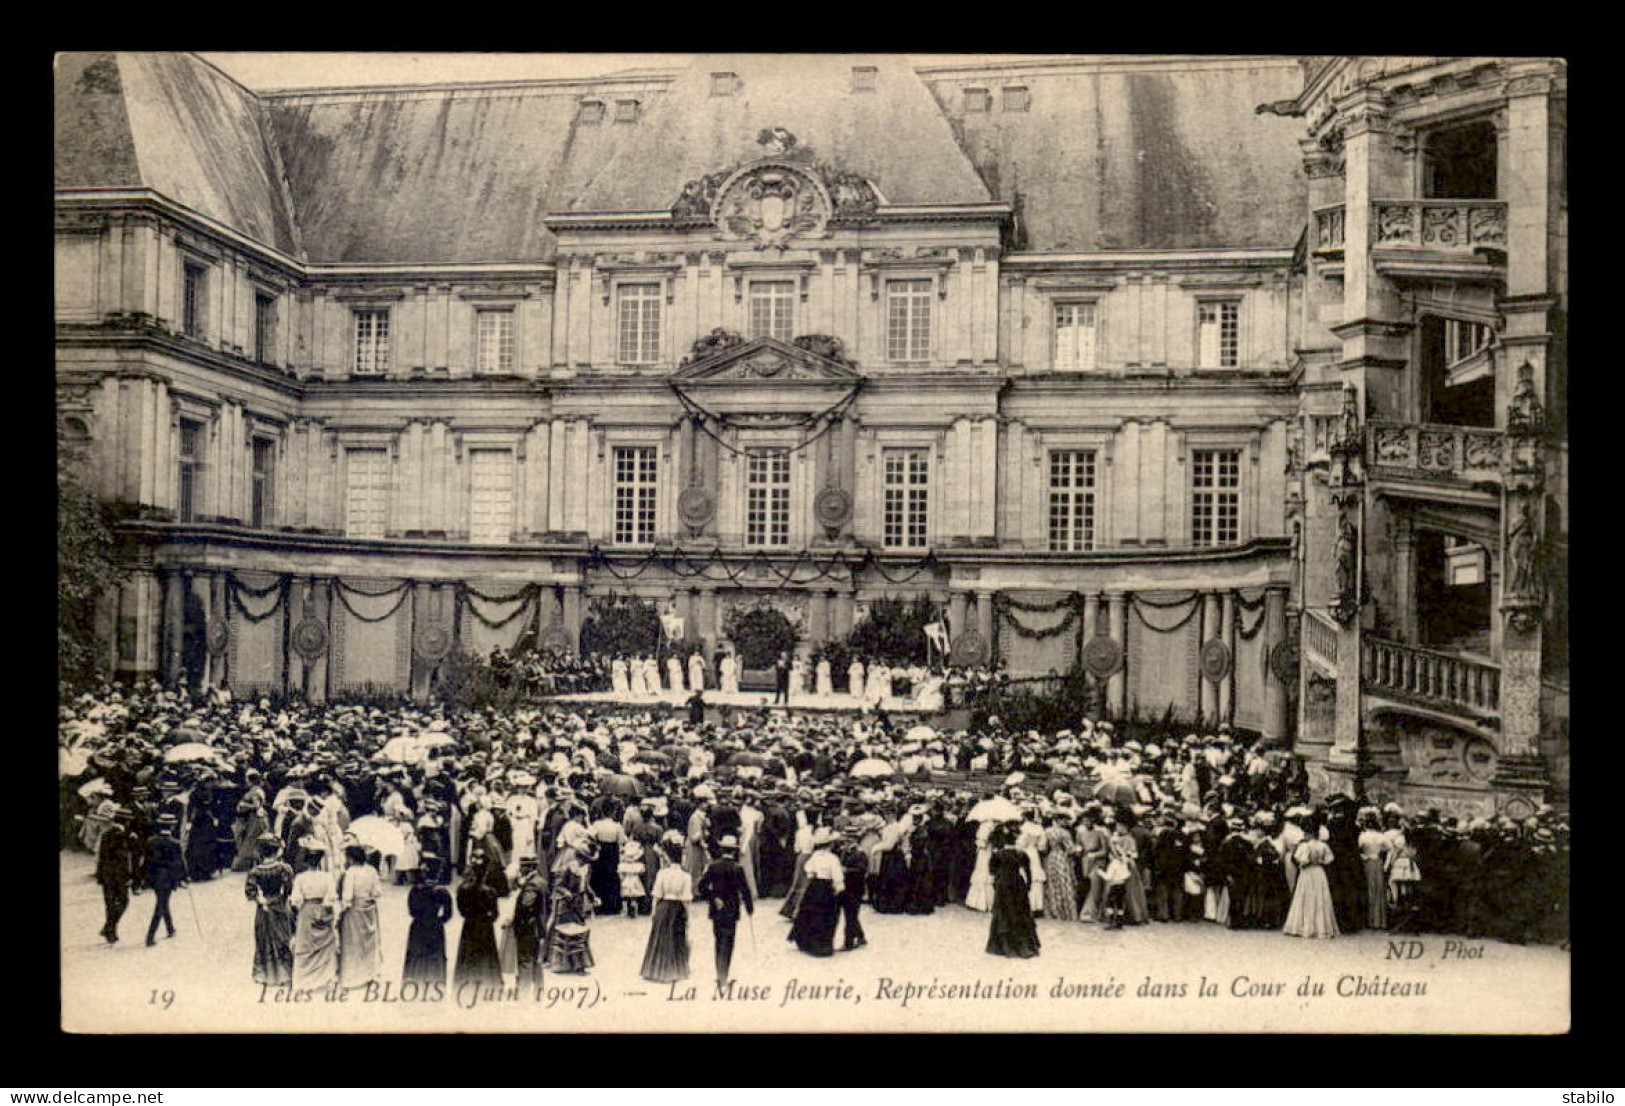 41 - BLOIS - LES FETES DE JUIN 1907 - LA MUSE FLEURIE, REPRESENTATION DANS LA COUR DU CHATEAU - Blois